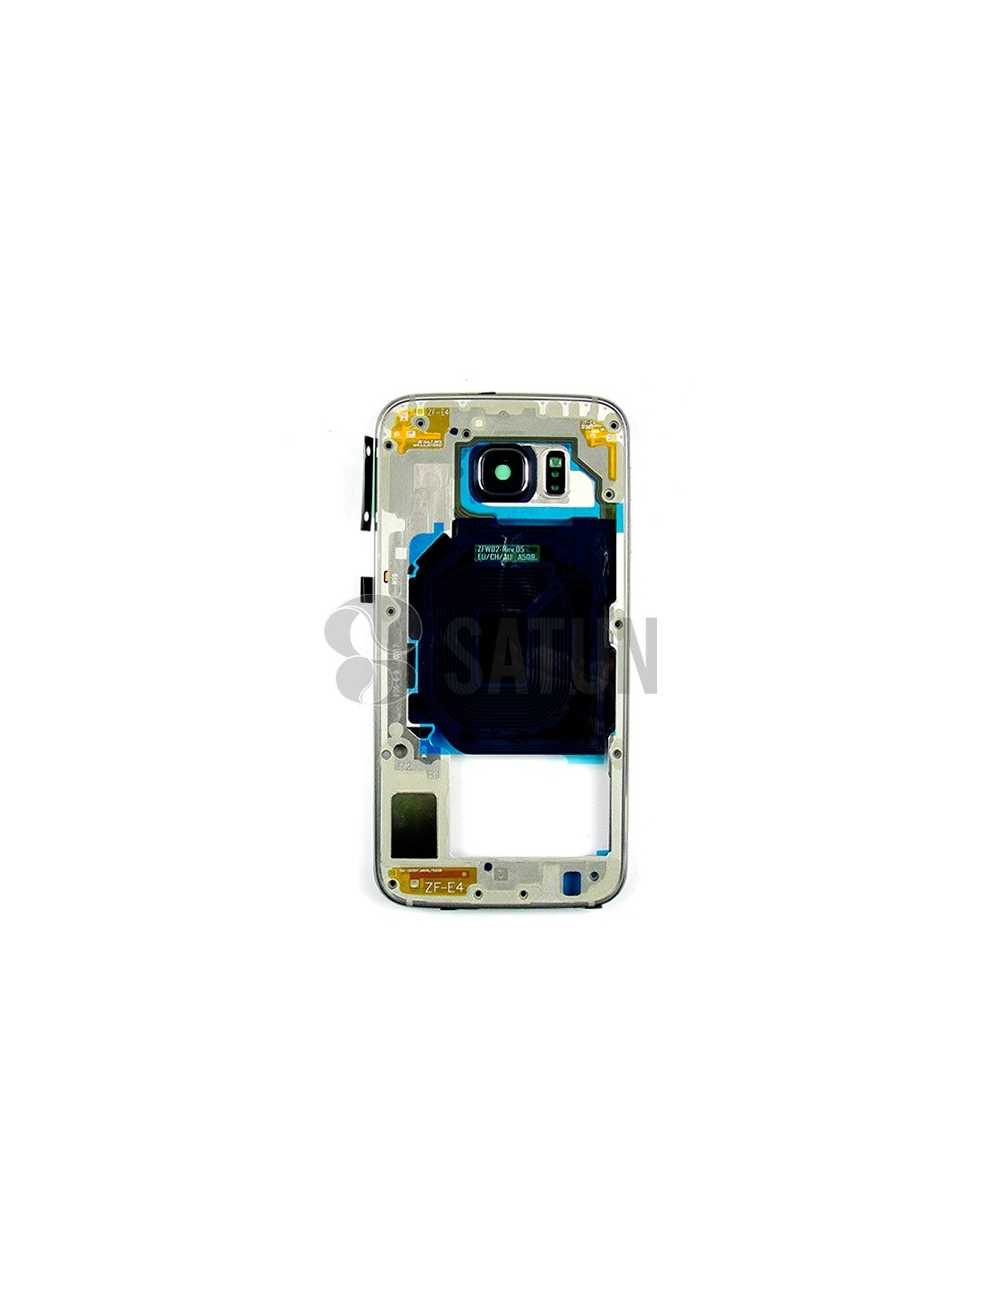 Carcasa intermedia Samsung Galaxy S6 azul (original con uso)